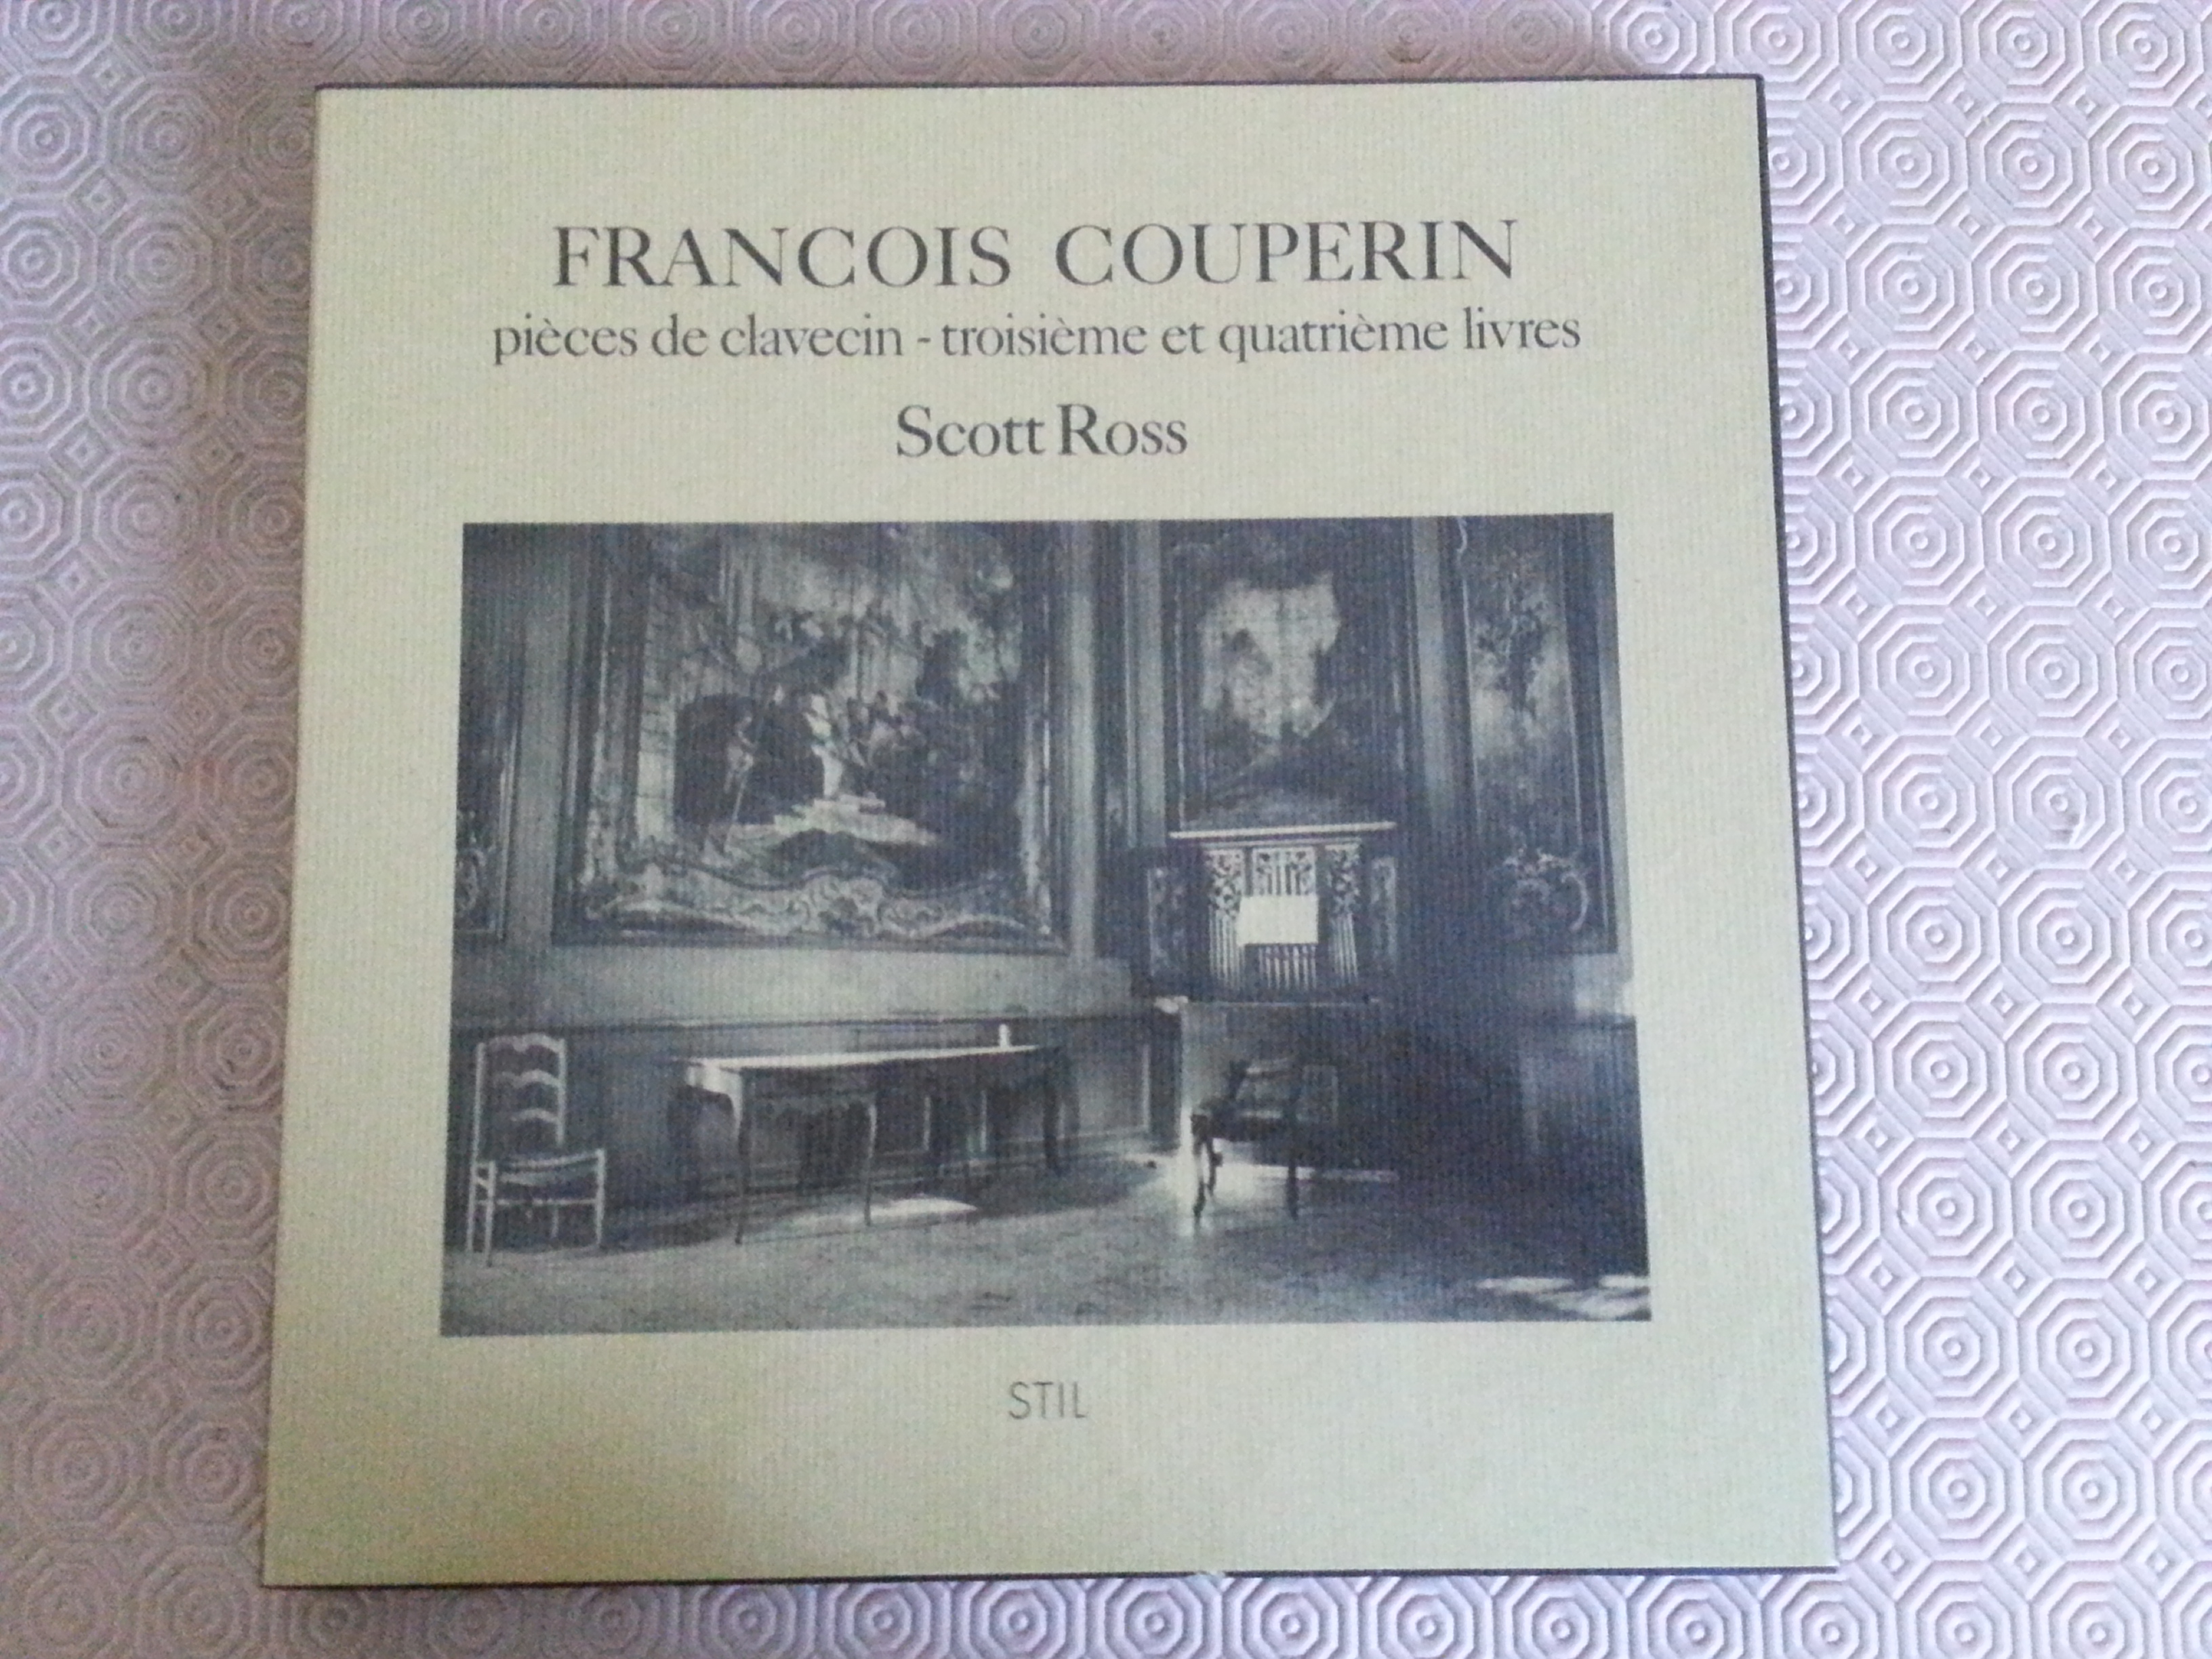 Acheter disque vinyle François Couperin pièces de clavecin - troisième et quatrième livres a vendre